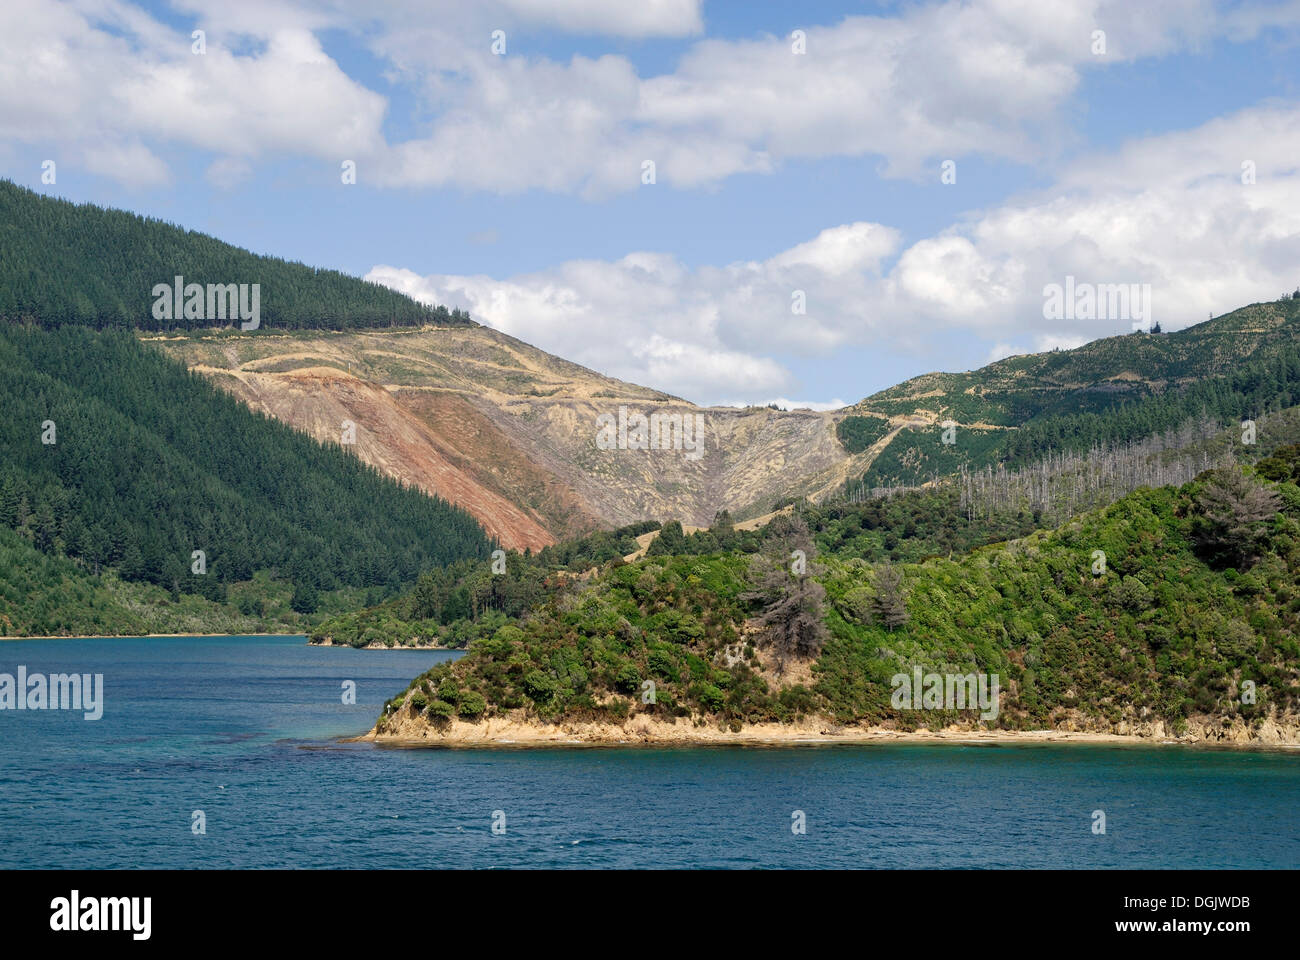 Bodenerosion durch Monokulturen und strenge logging, Tory Channel, Marlborough Sounds, Südinsel, Neuseeland Stockfoto